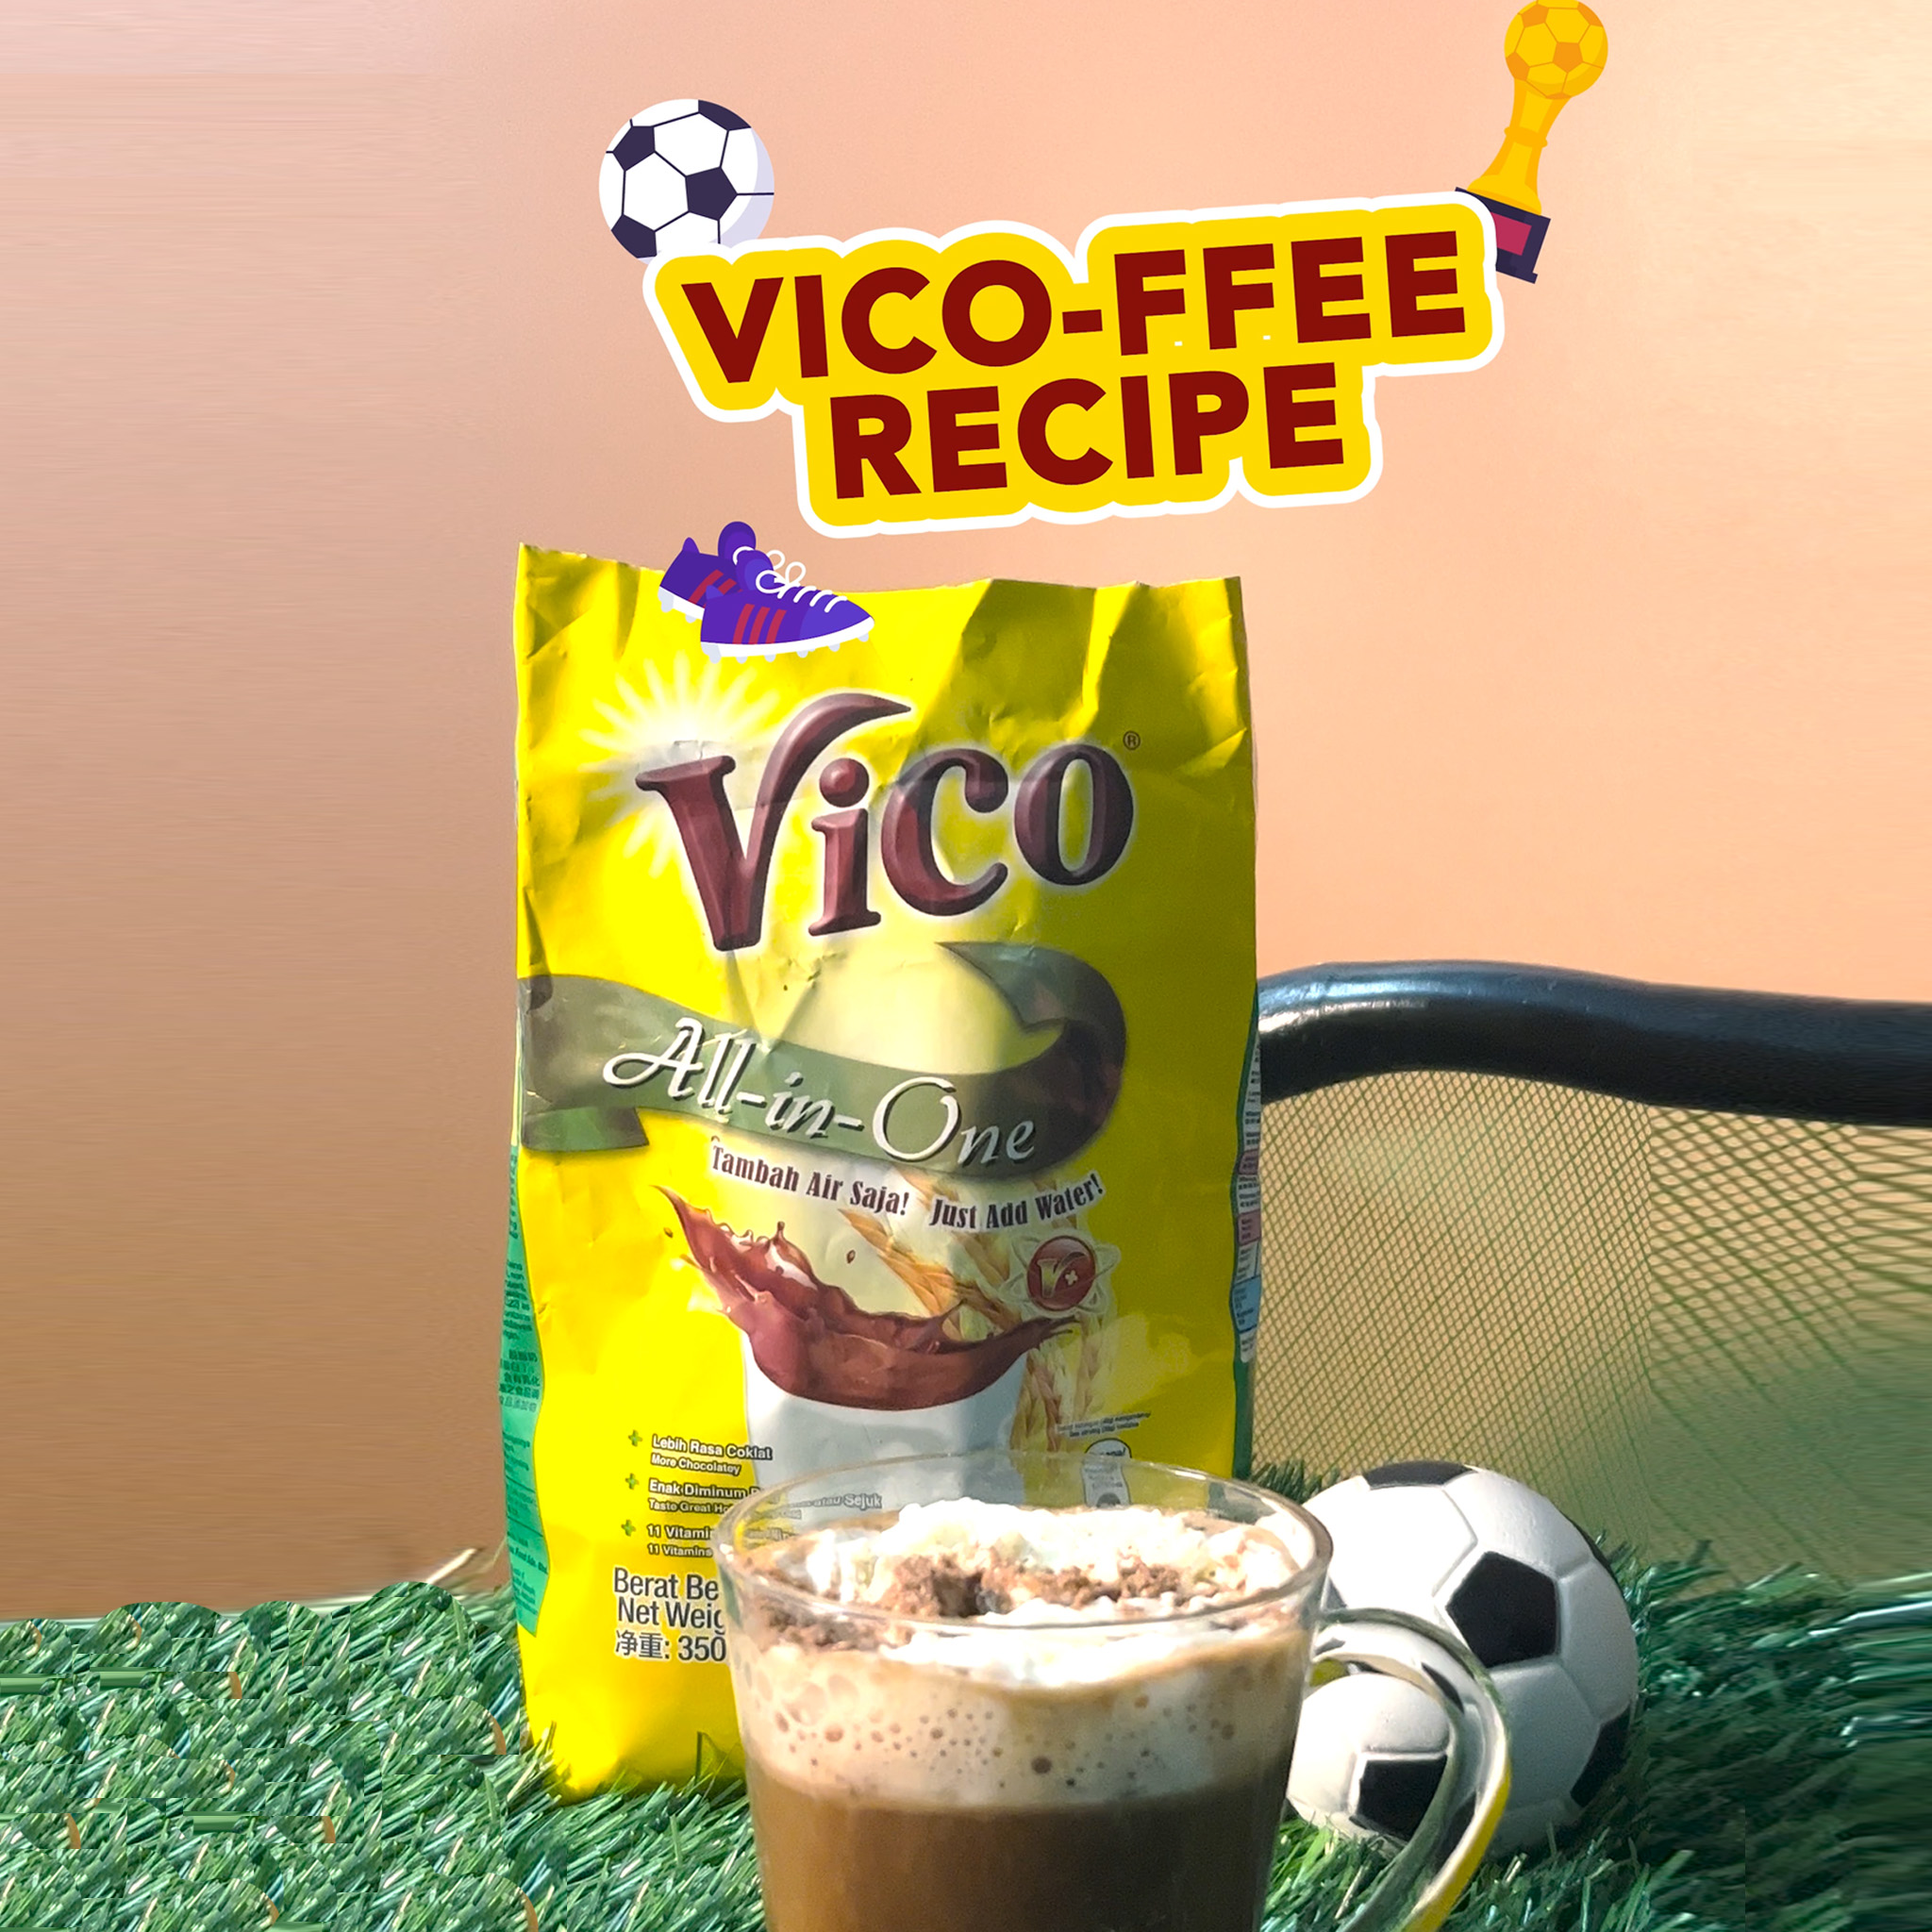 Vico-ffee Recipe